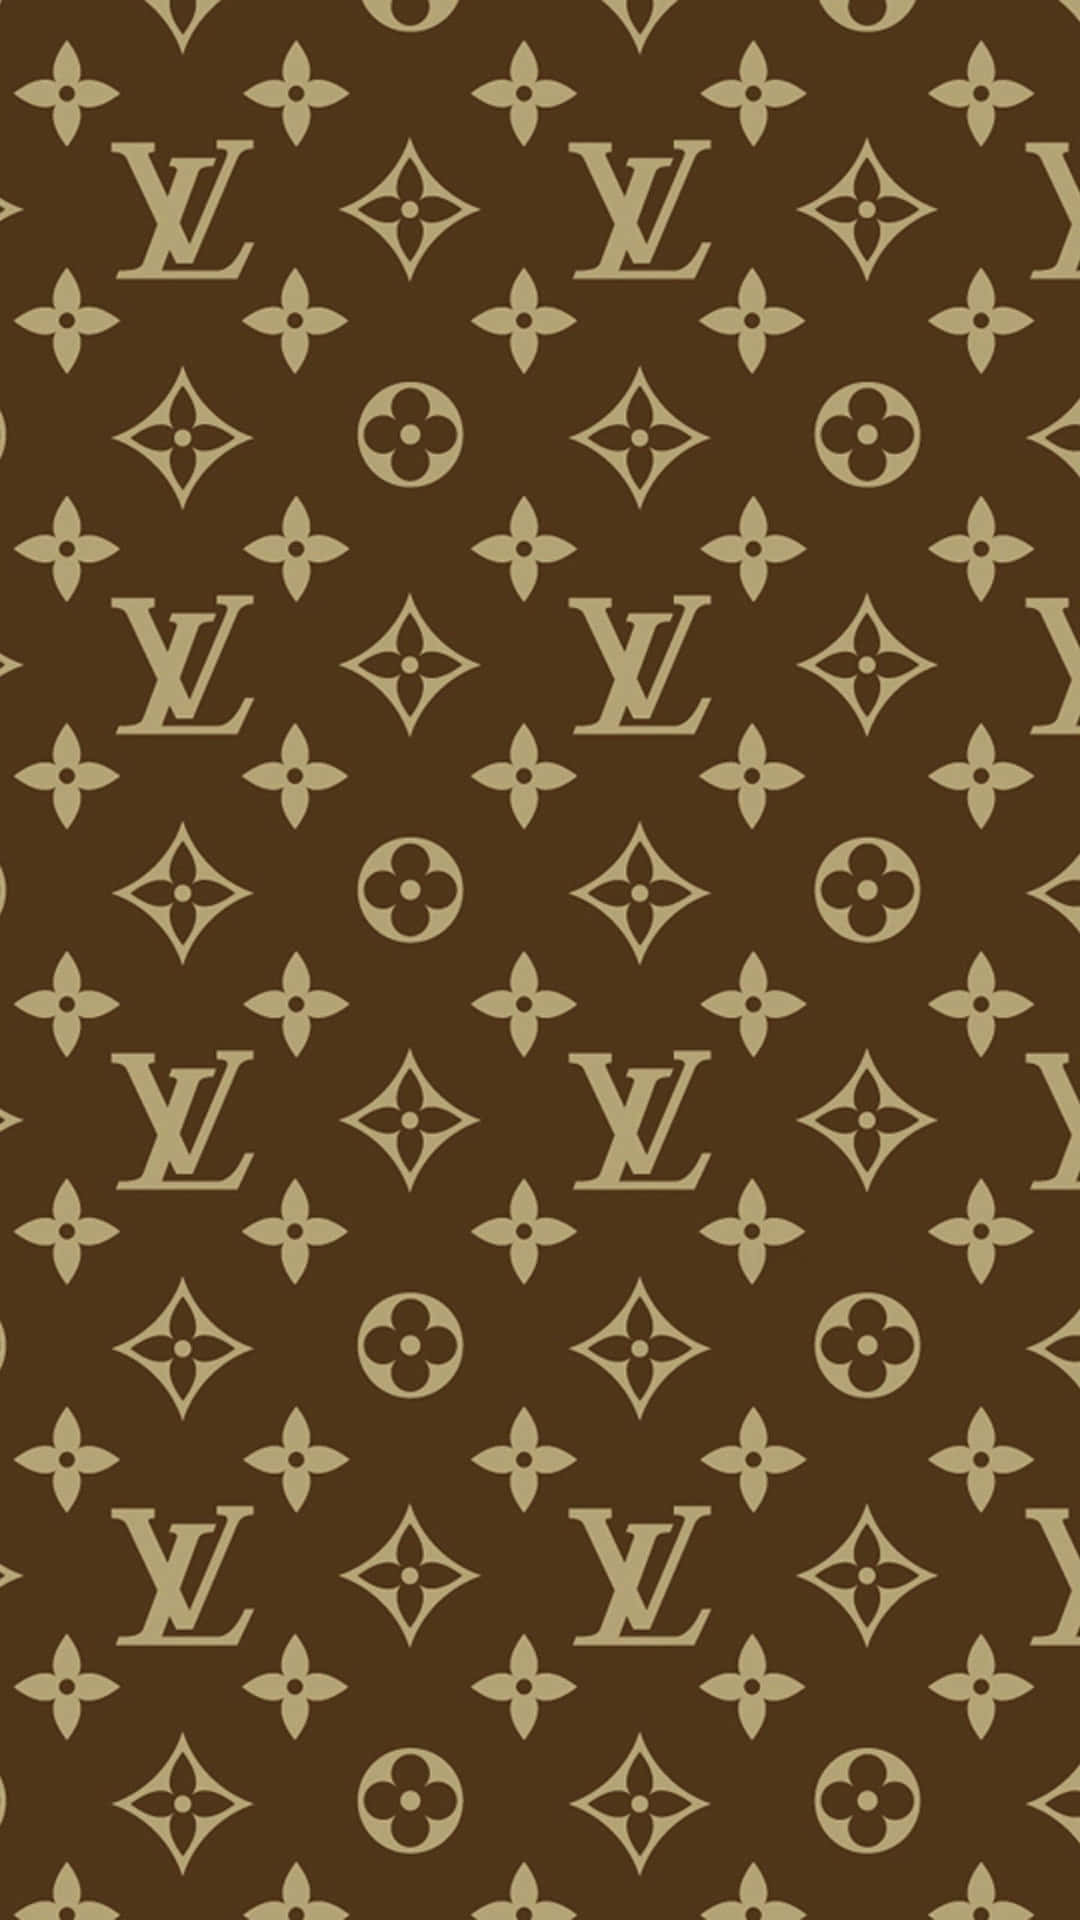 Louis Vuitton 2K Wallpaper, 2560 x 1440 px